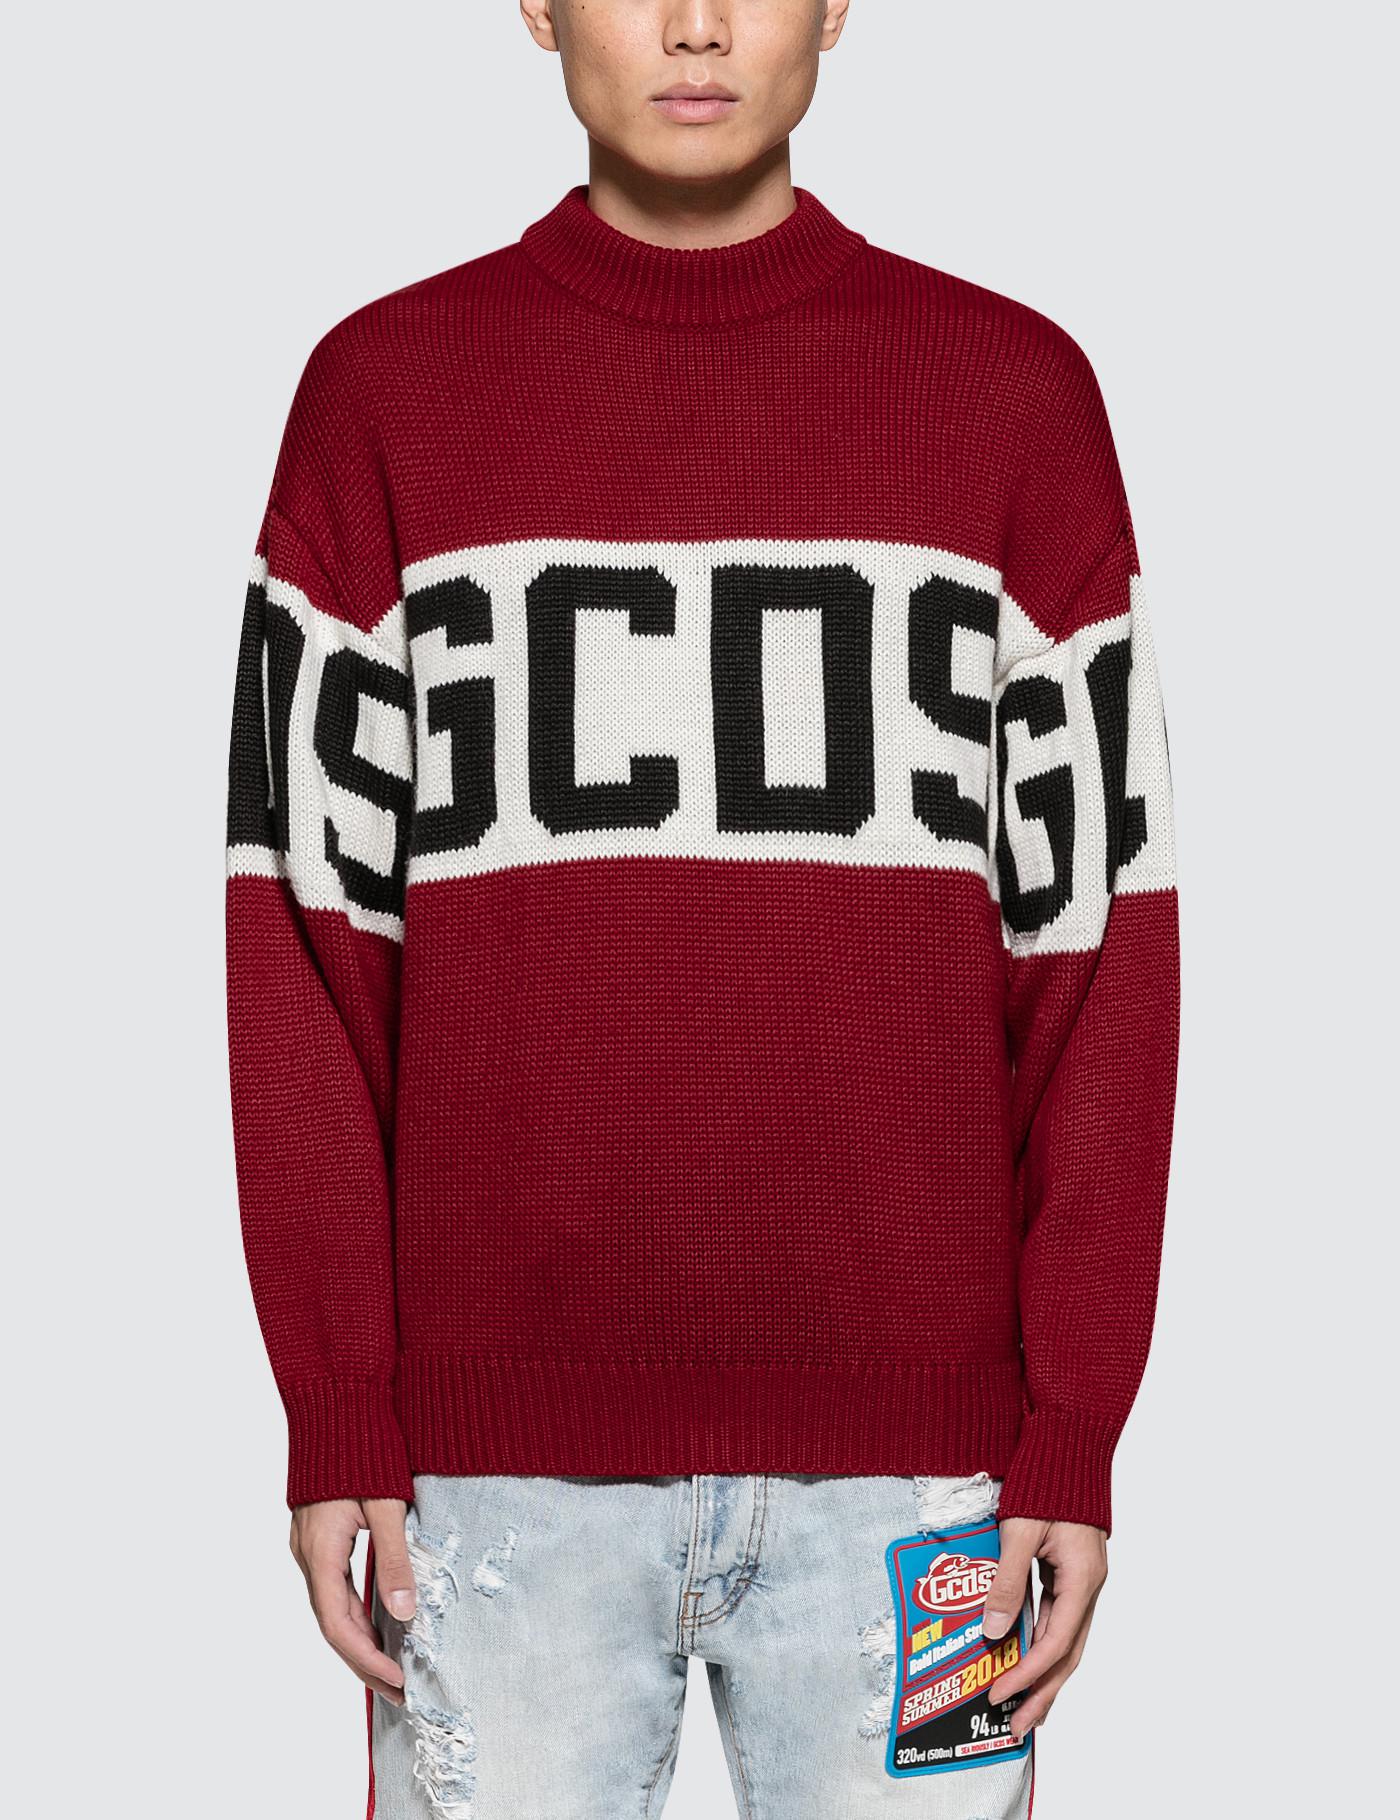 Gcds Wool Logo Sweater in Red for Men - Lyst